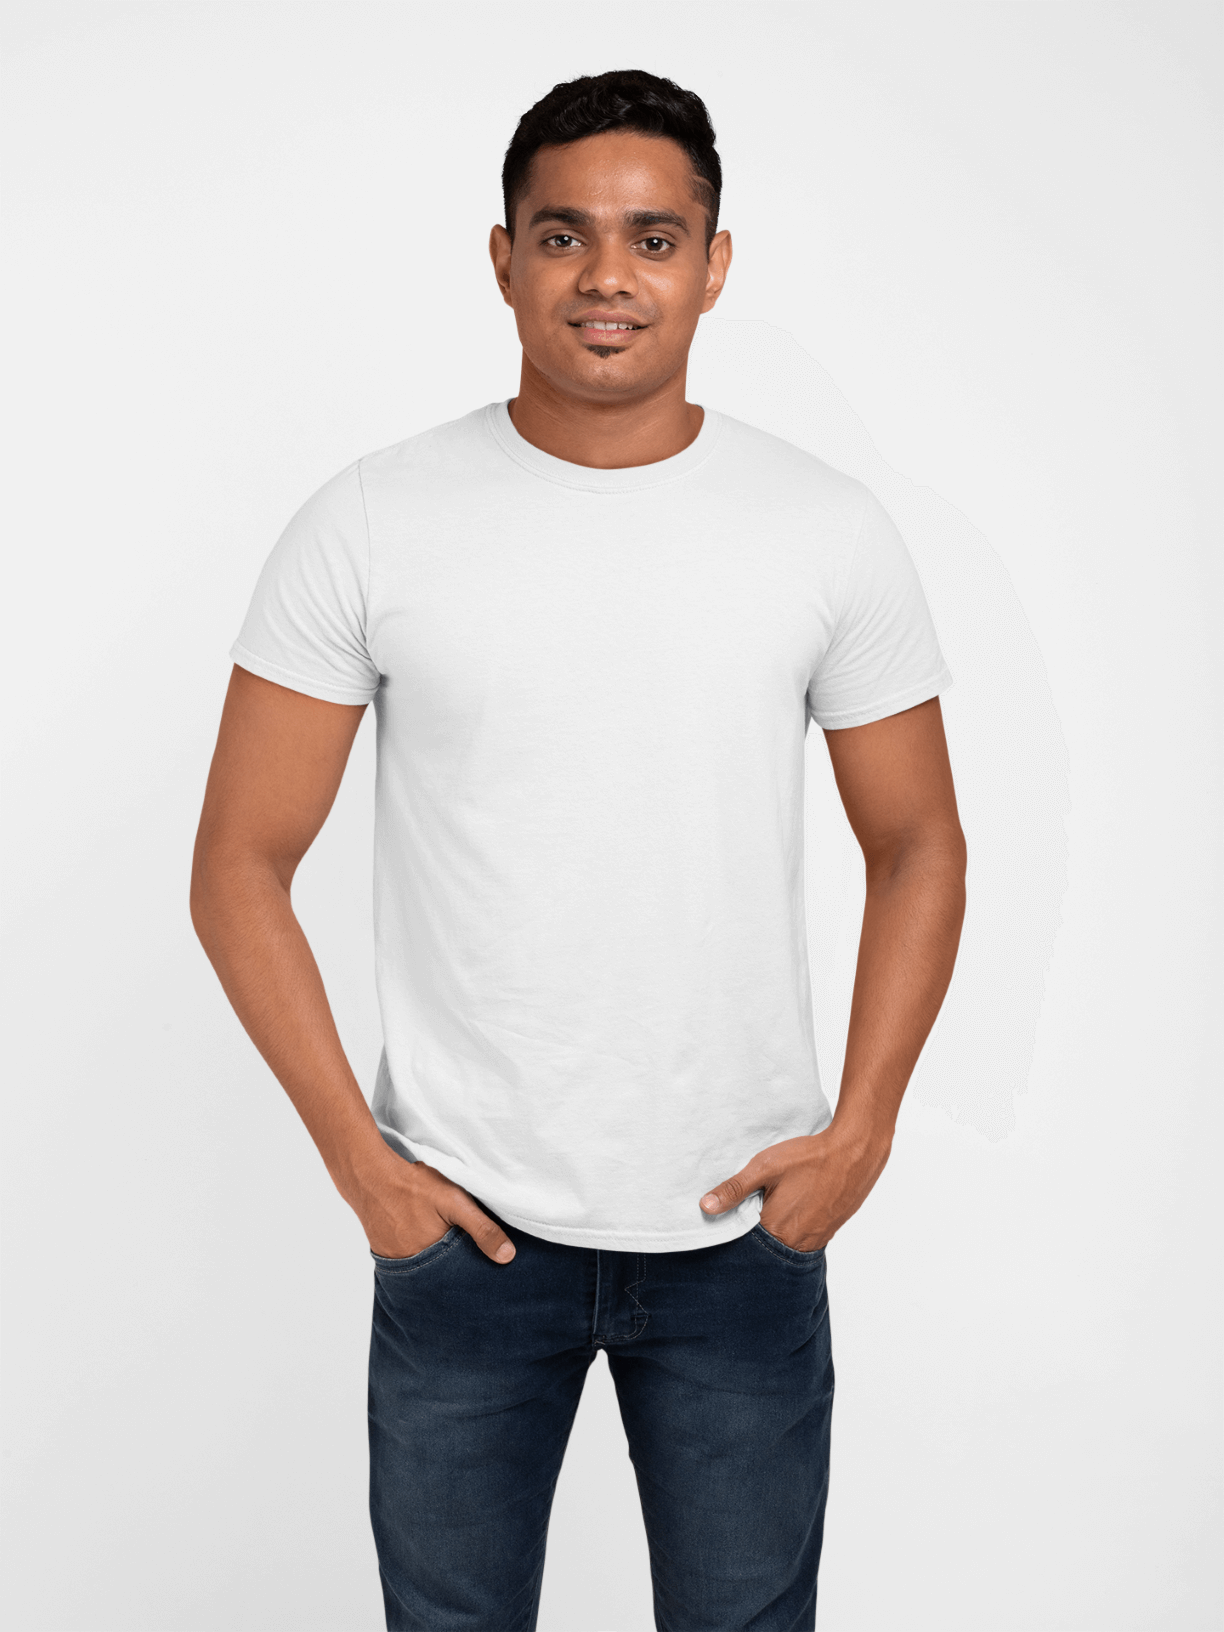 Thick Plain White T Shirt Men's Round Neck Plain T-shirt White(regular ...